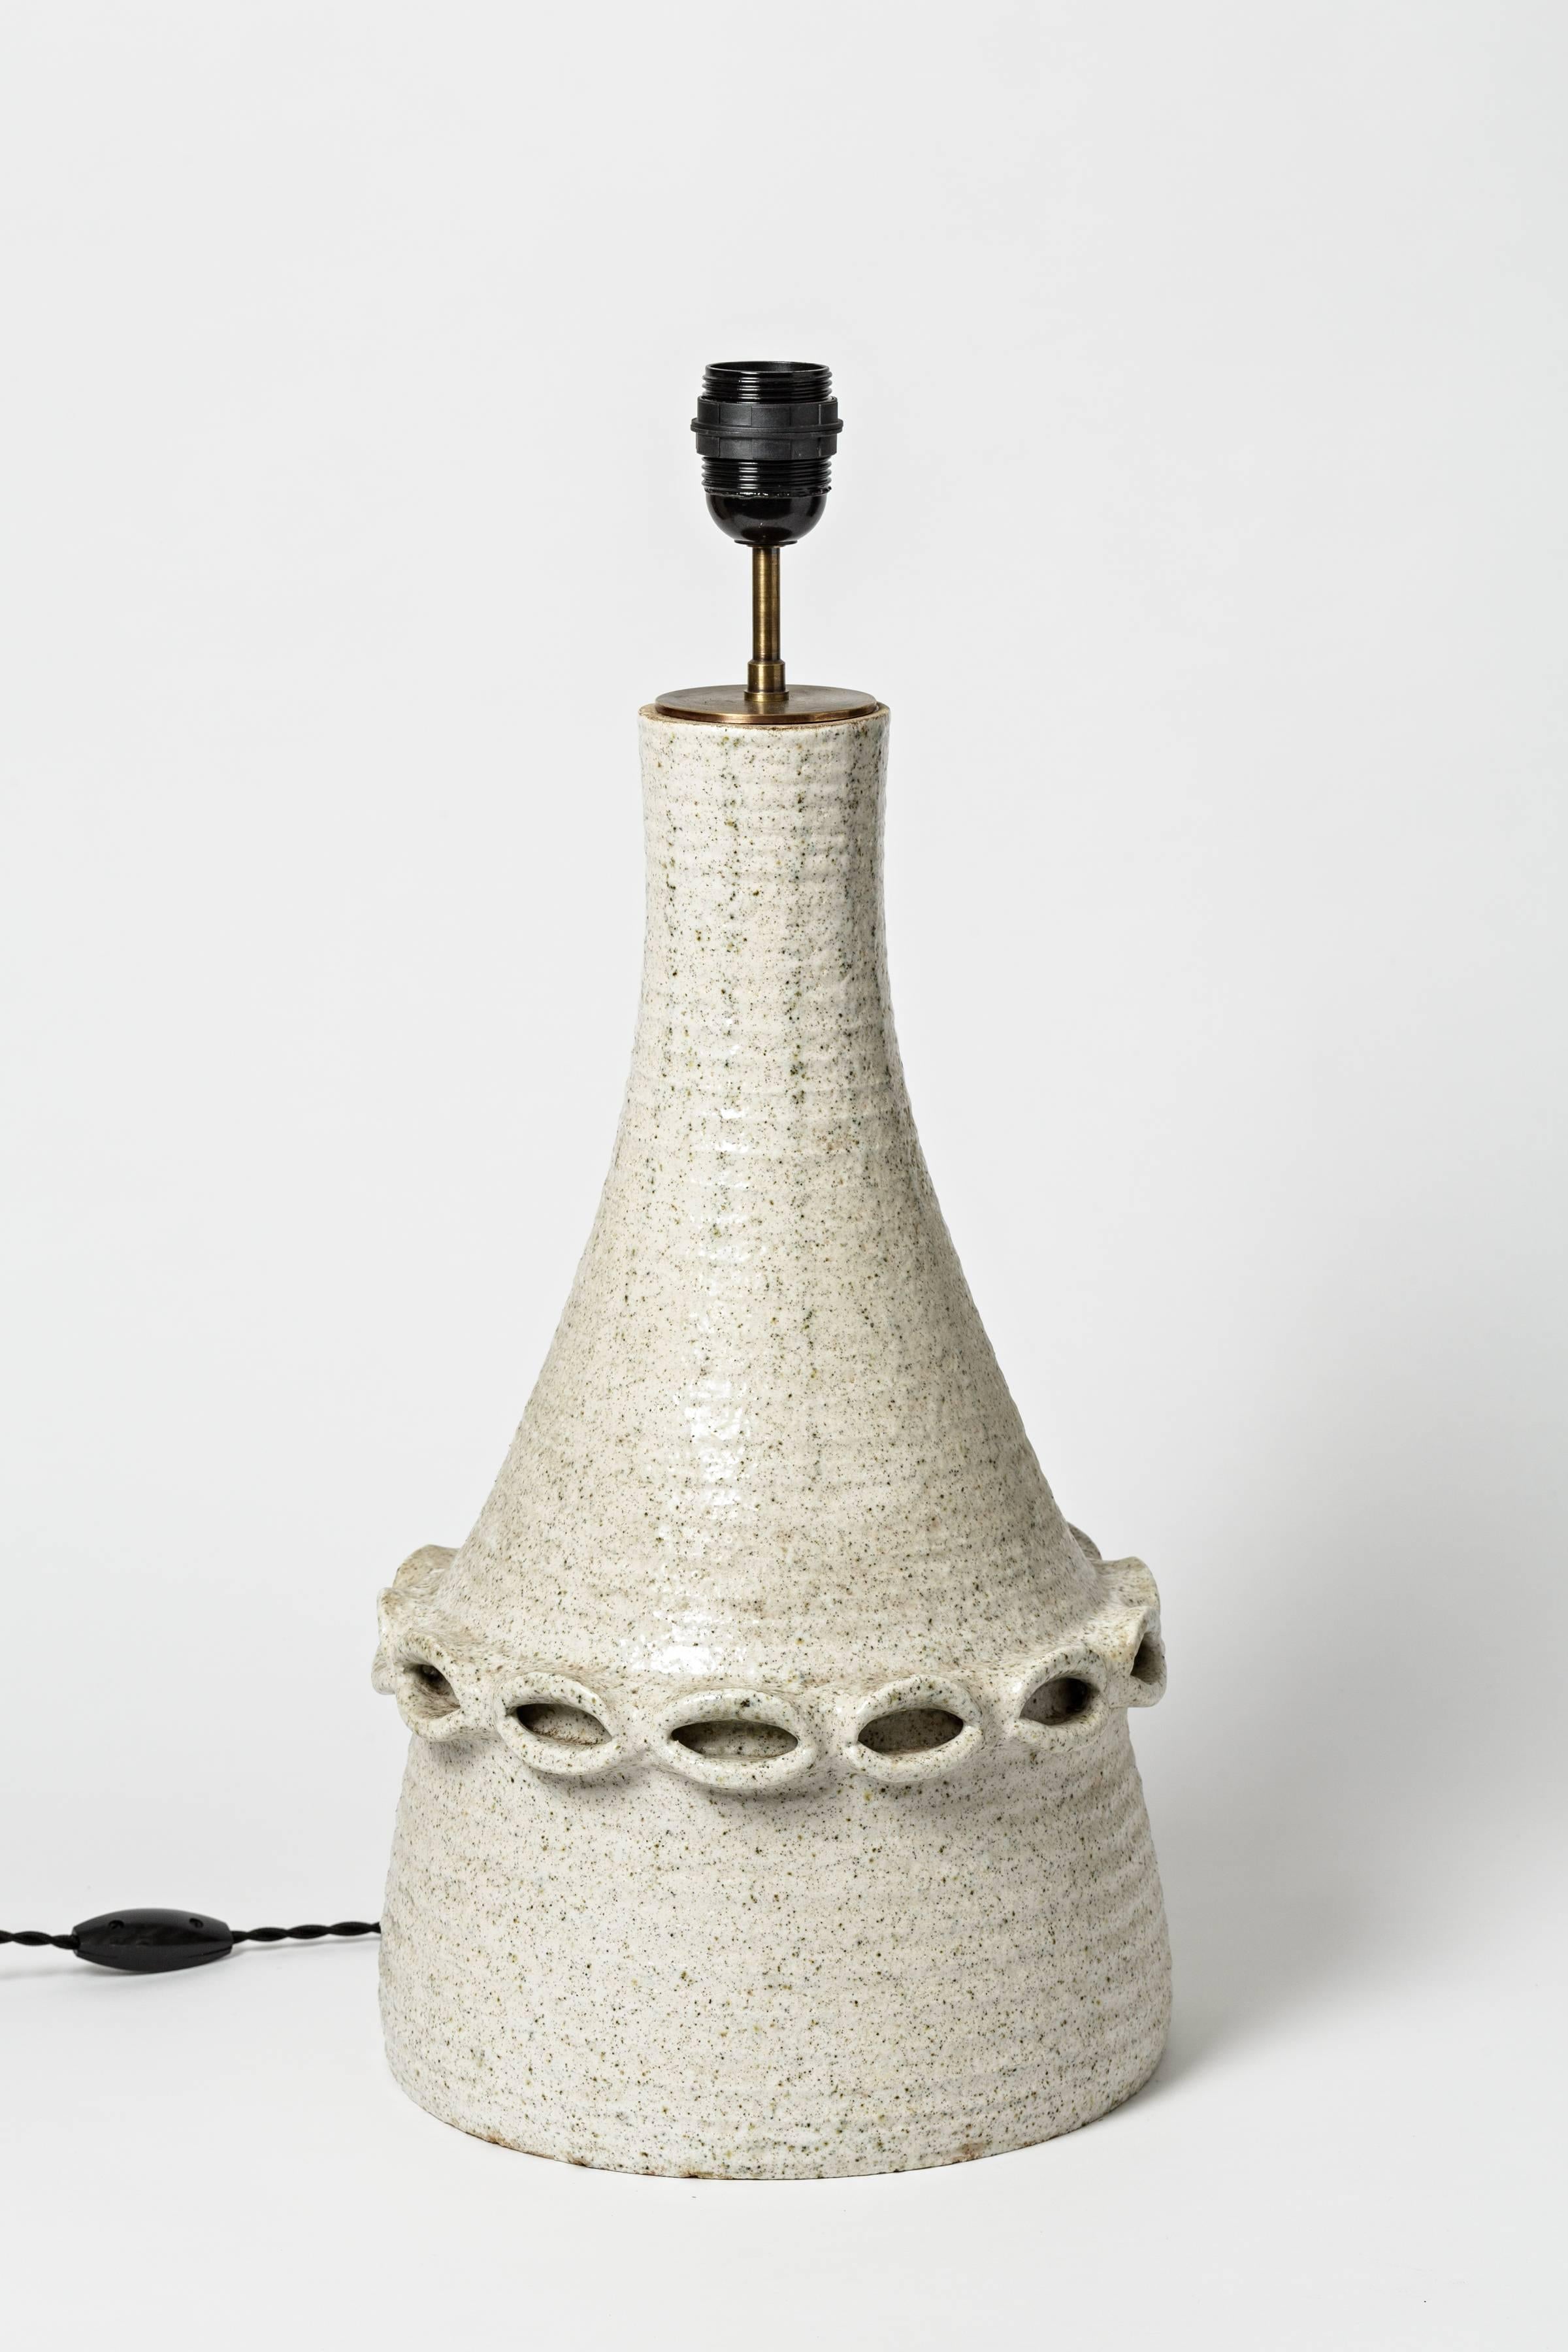 Une lampe en céramique d'Accolay avec une décoration géométrique et une glaçure blanche.
Conditions d'origine parfaites,
vers 1970.

Vendu avec un nouveau système électrique.

Dimensions avec système électrique : 22' x 9' 1/2 x 9' 1/2